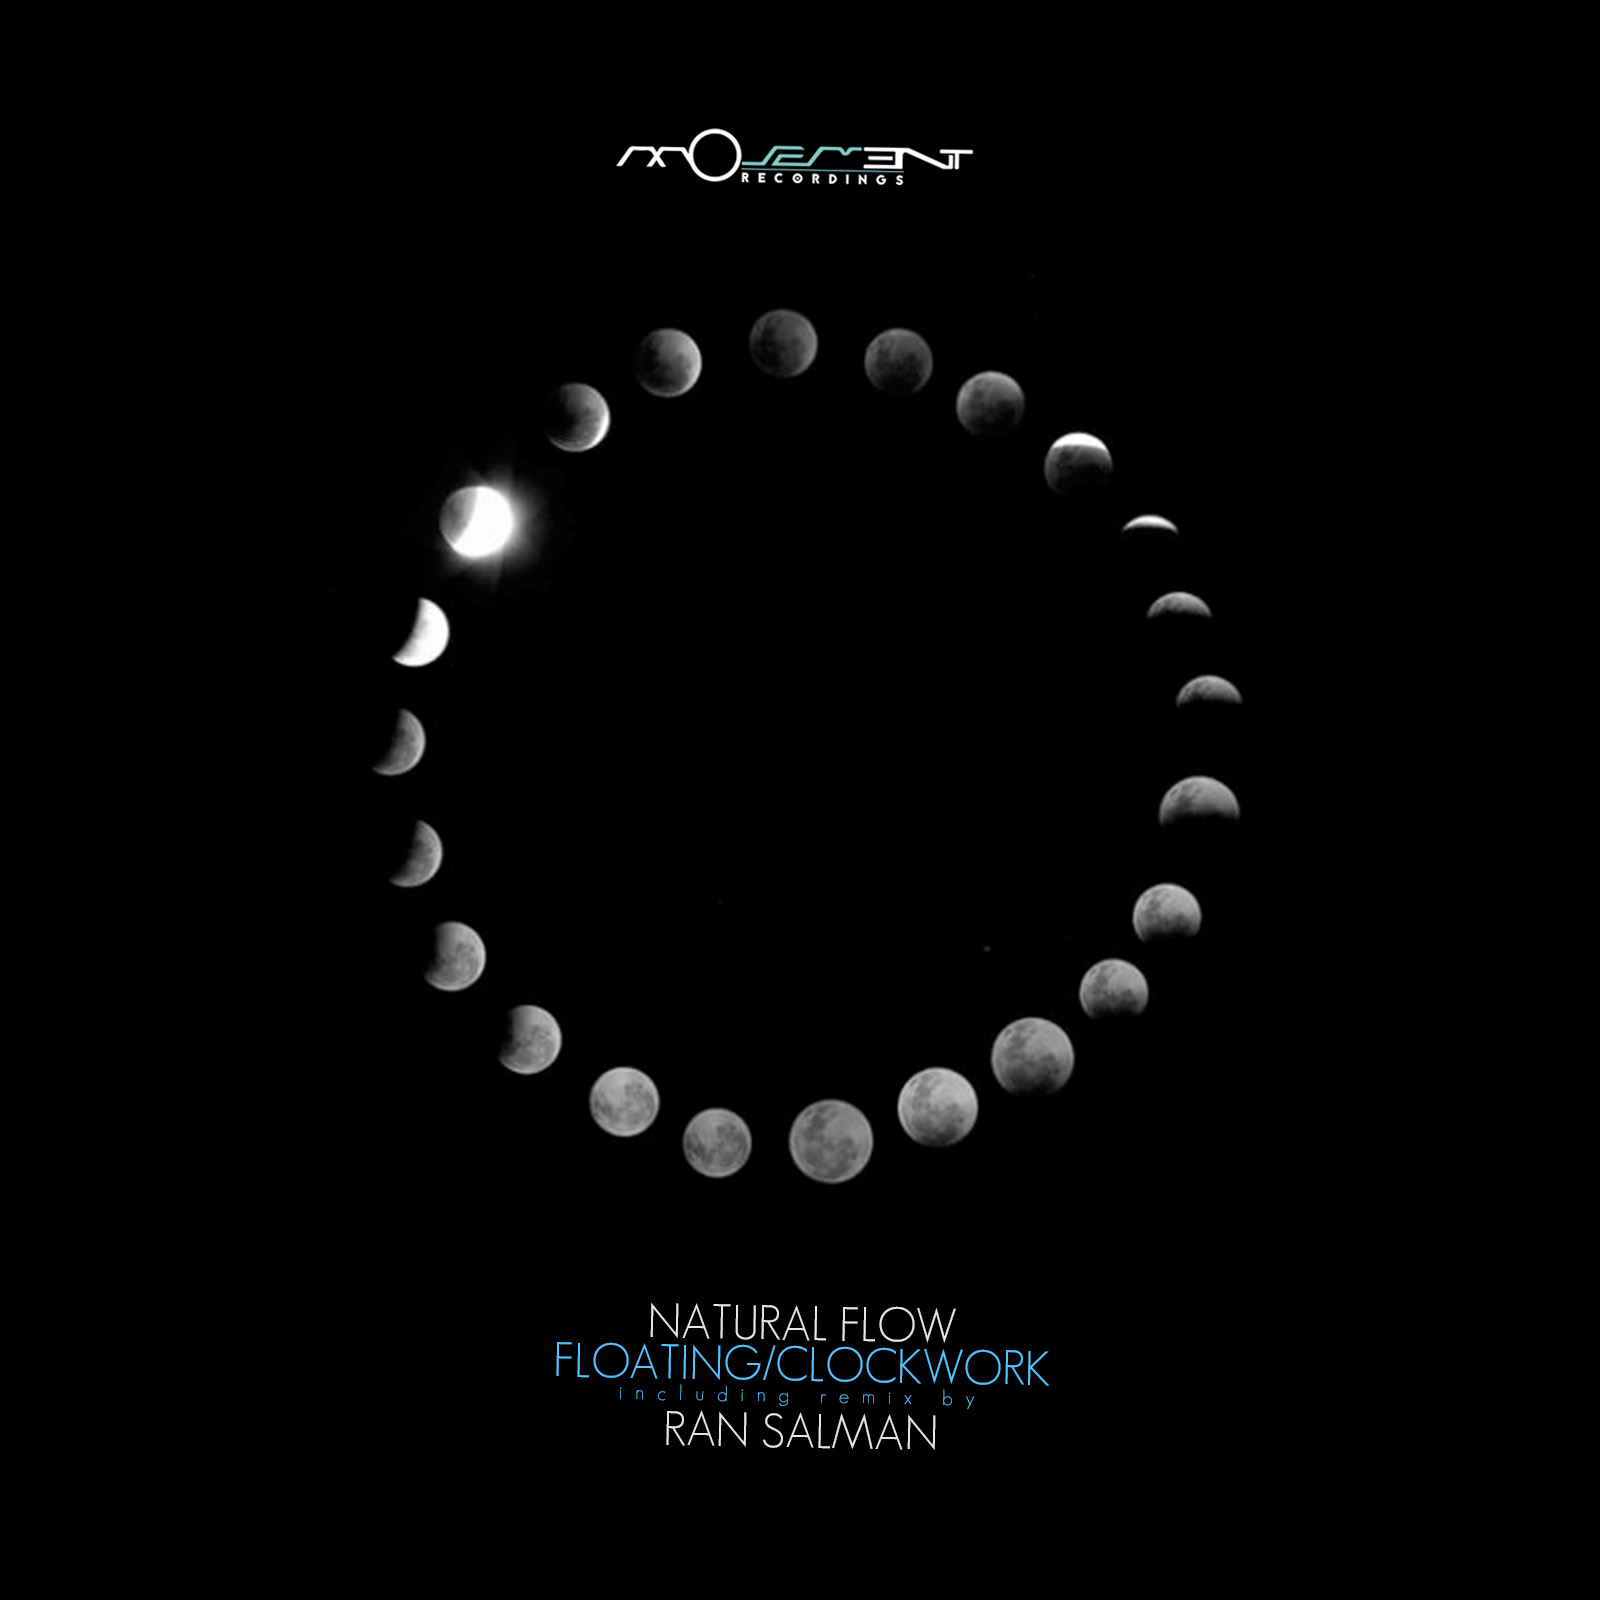 Natural flow. Movement (Clockwork). Ran Salman. Промо релиз музыкального альбома.